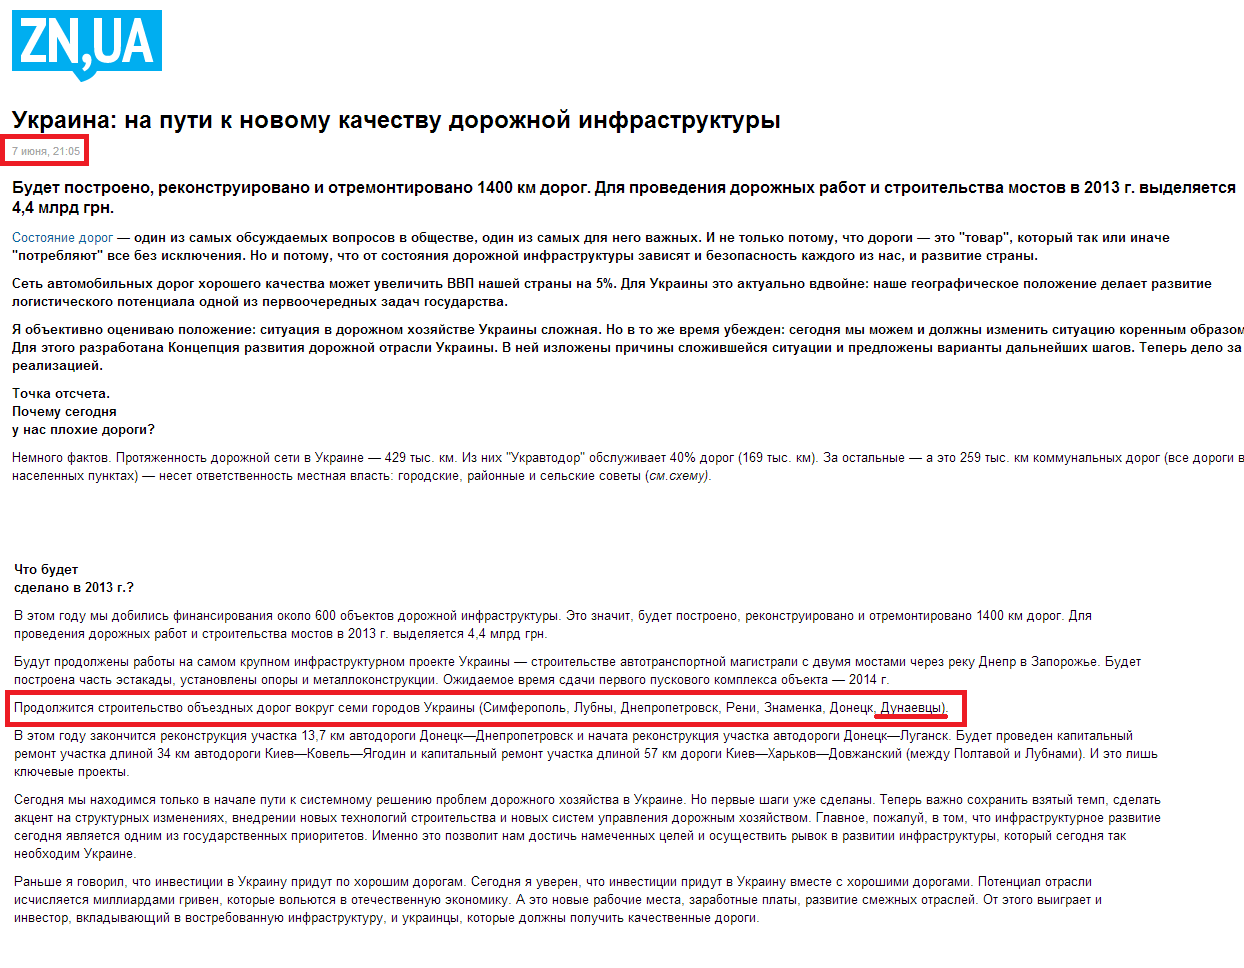 http://gazeta.zn.ua/finances/ukraina-na-puti-k-novomu-kachestvu-dorozhnoy-infrastruktury-_.html